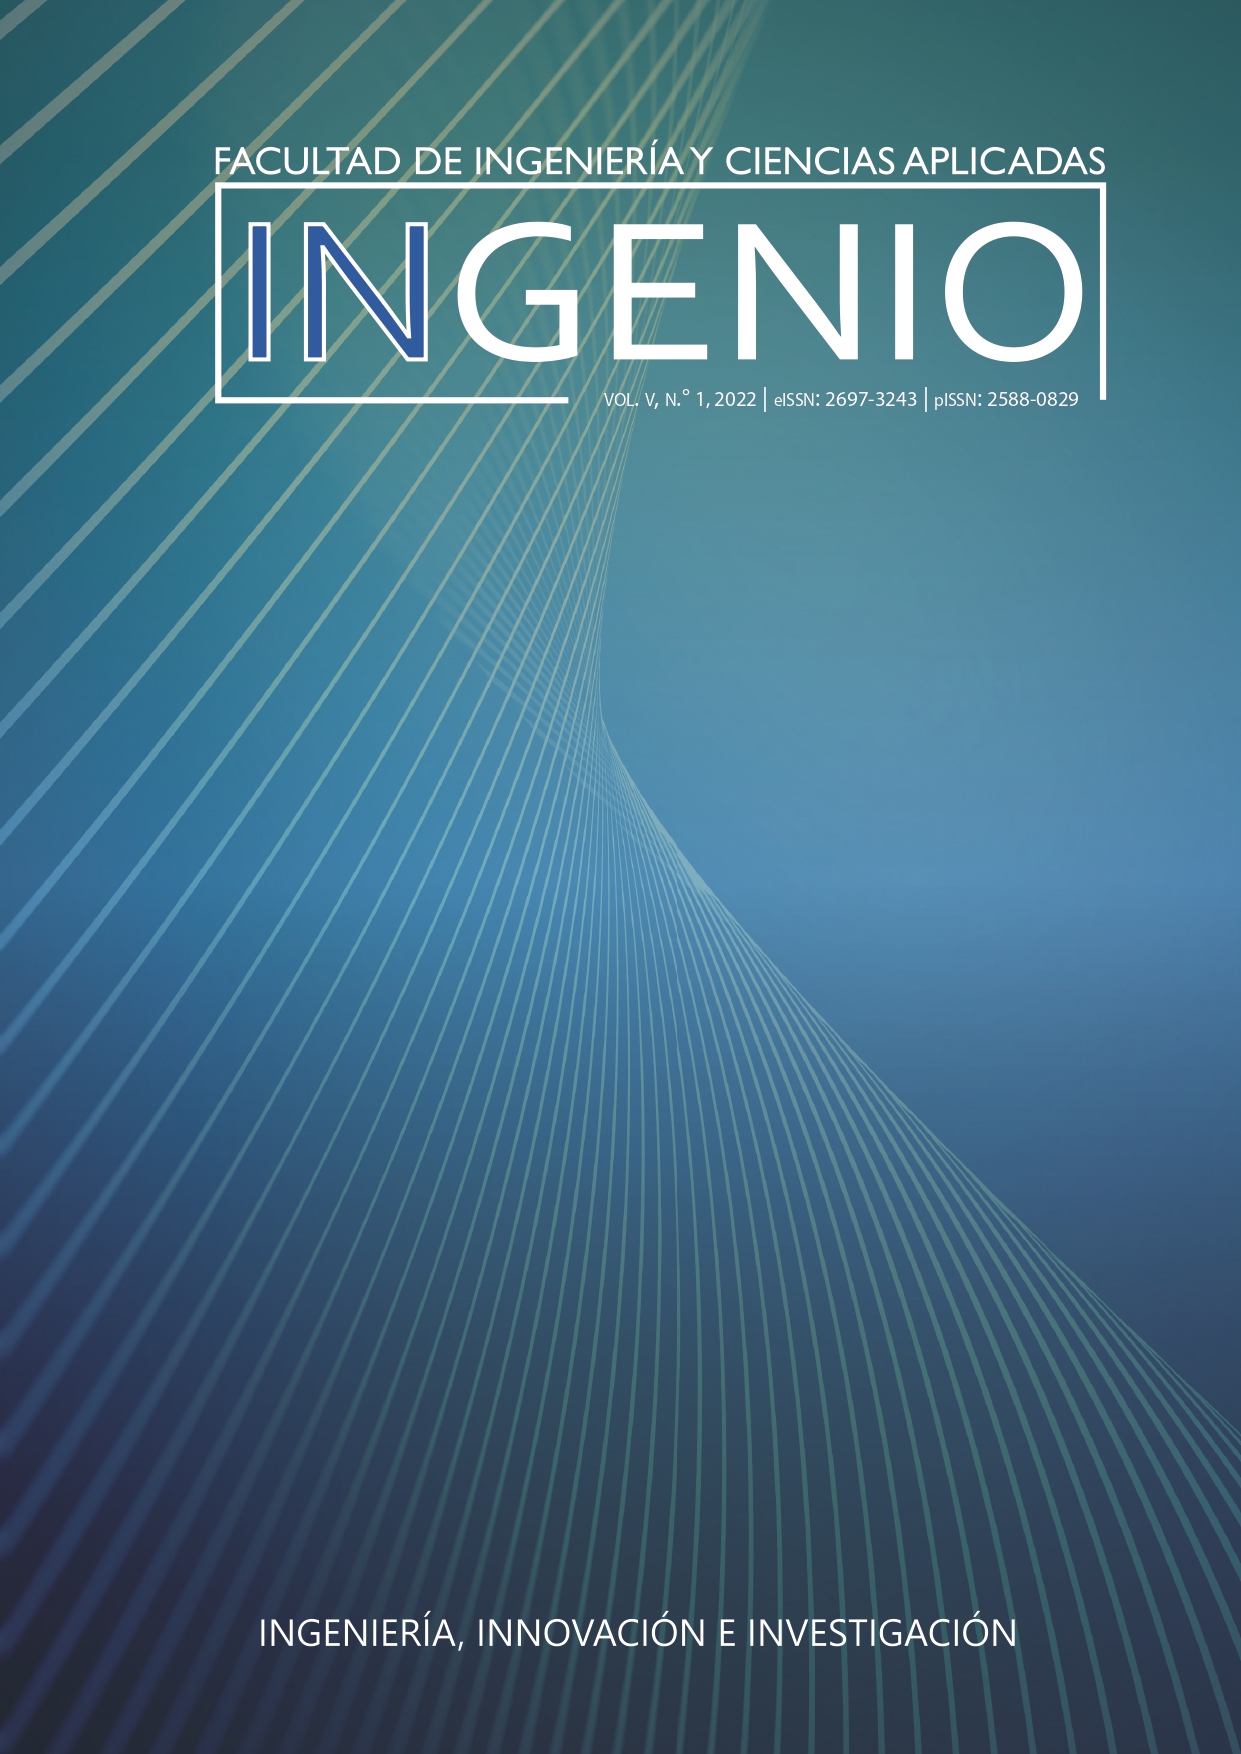 					Ver Vol. 5 Núm. 1 (2022): Revista Ingenio, Facultad de Ingeniería y Ciencias Aplicadas
				